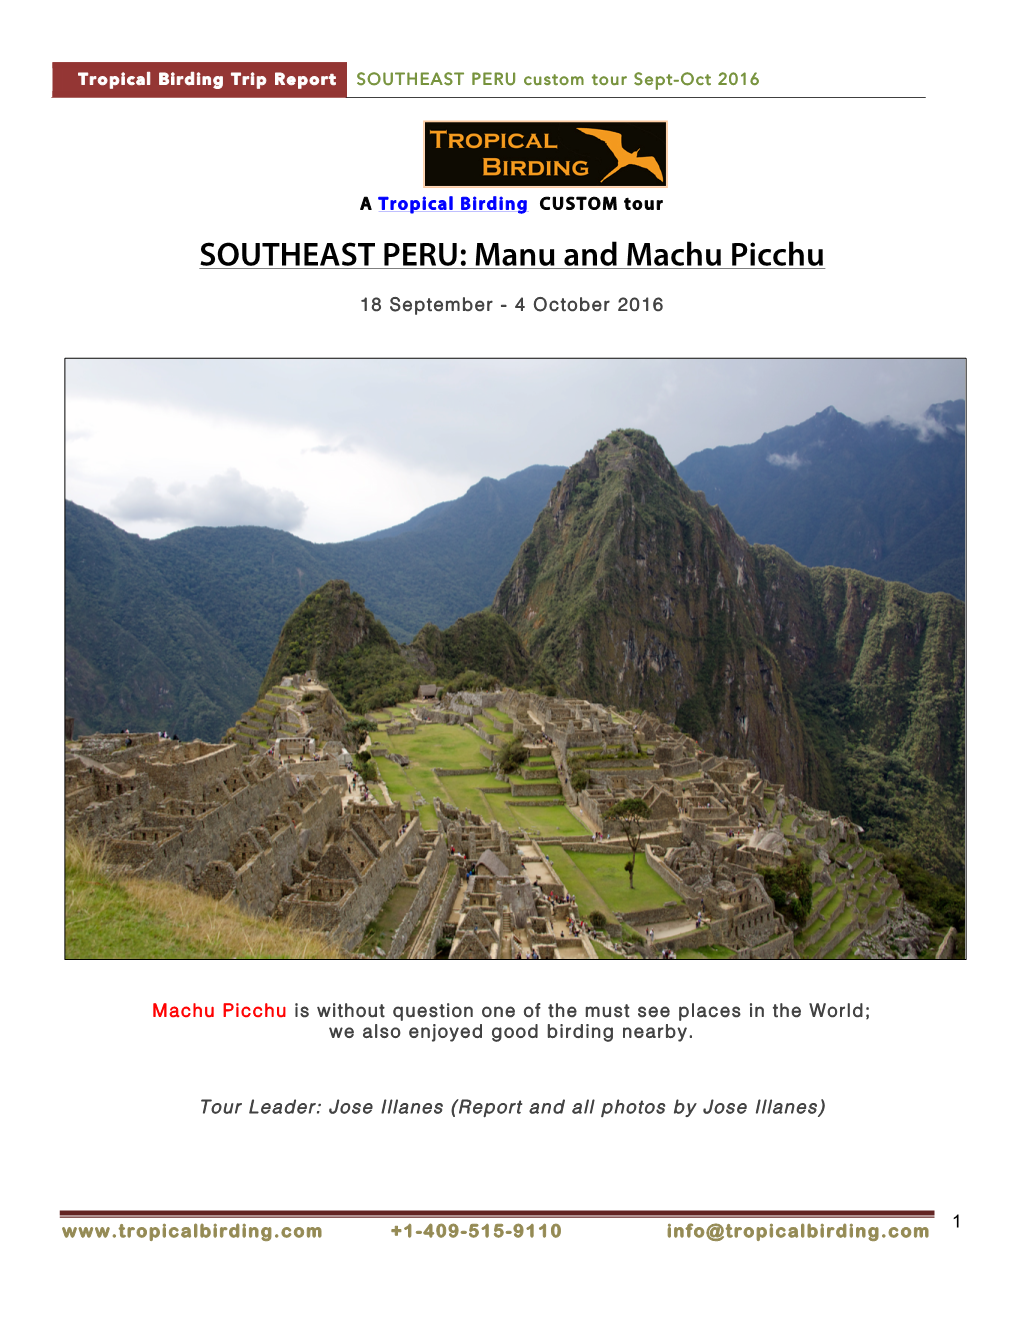 SOUTHEAST PERU Custom Tour Sept-Oct 2016